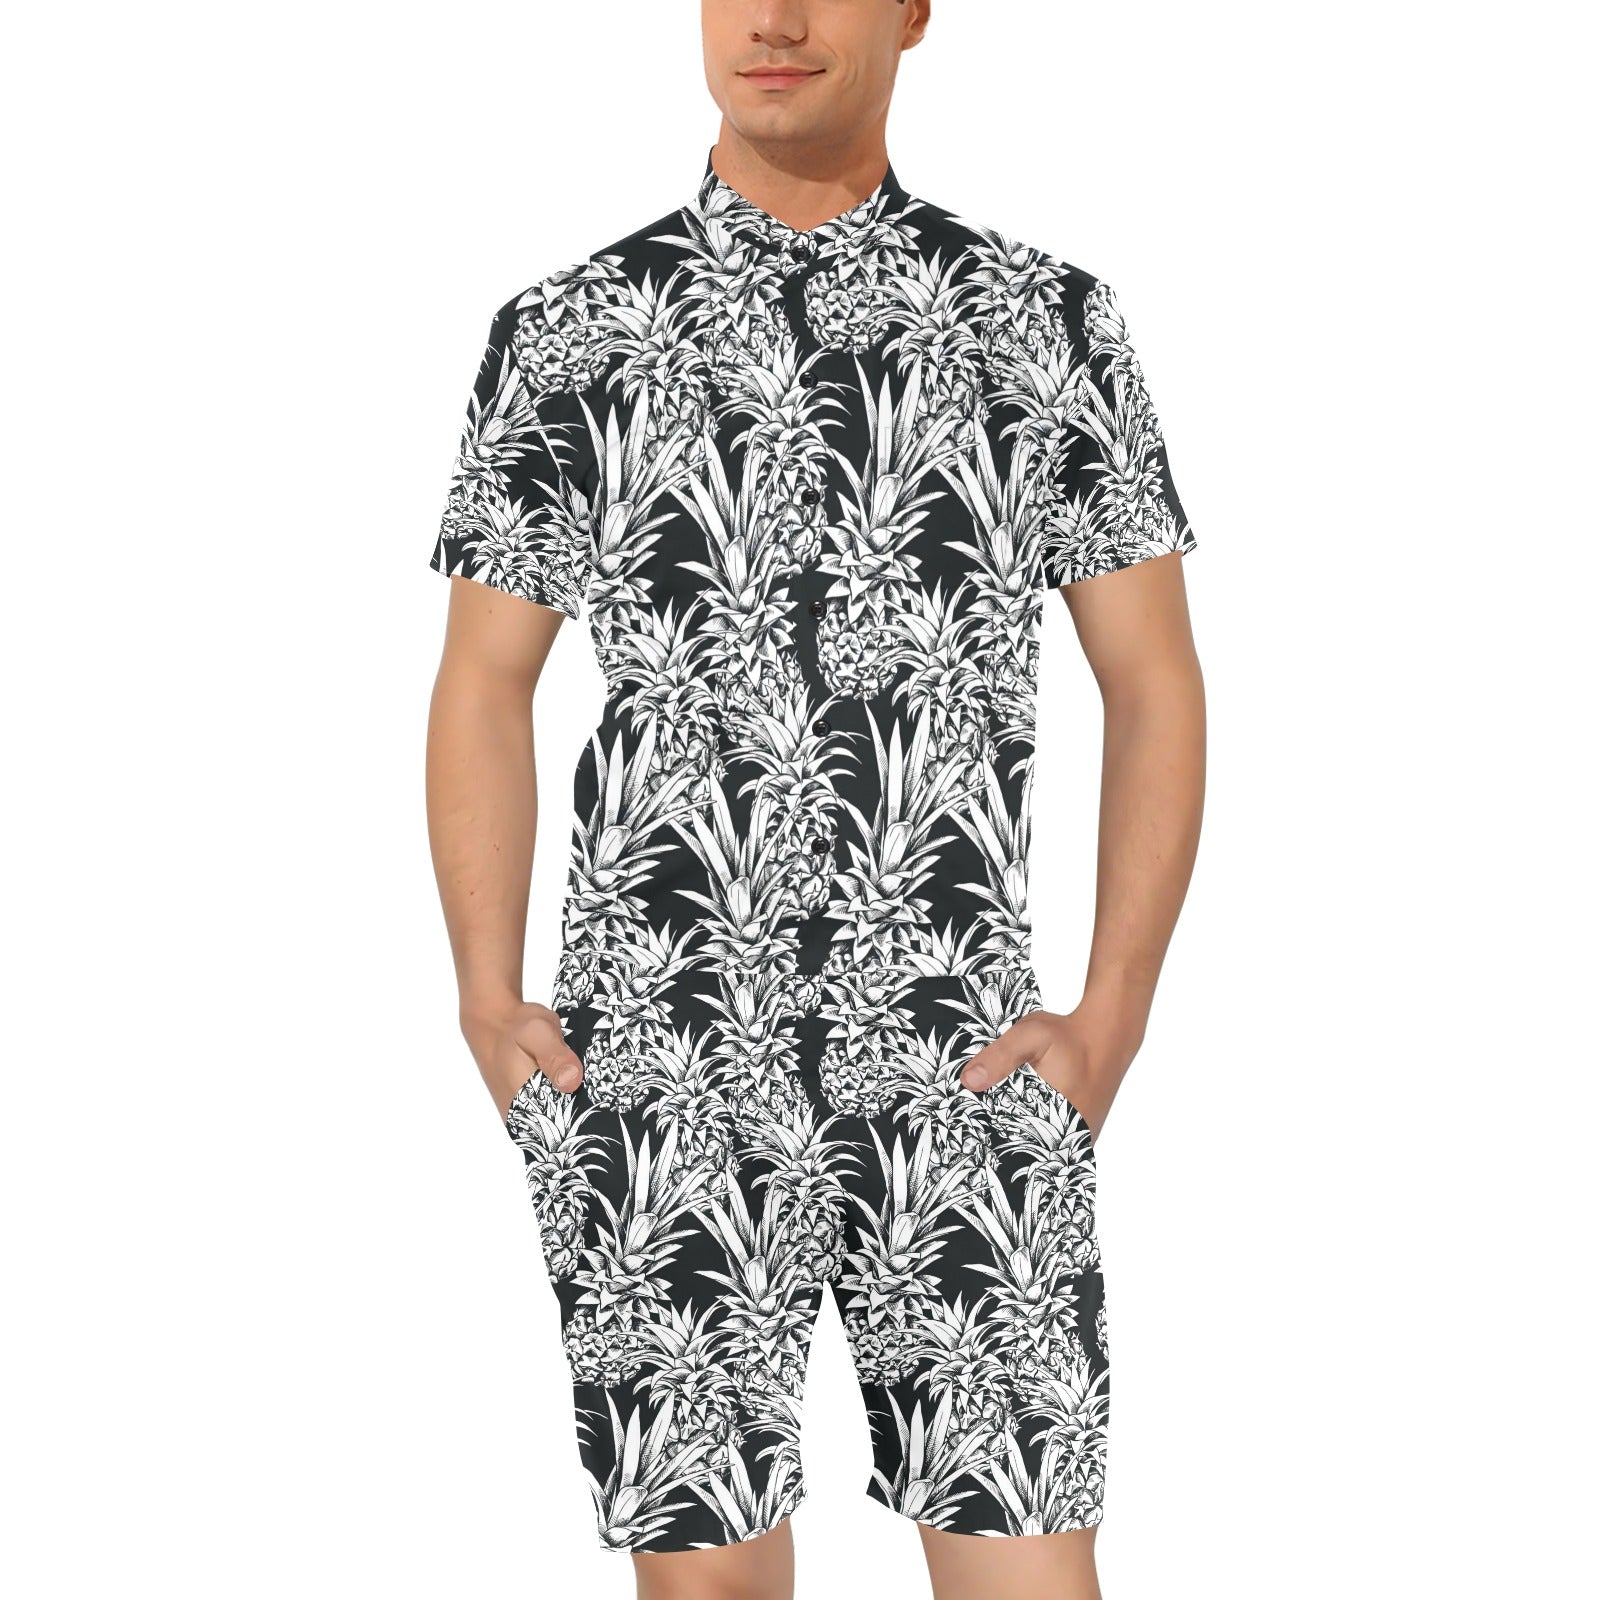 Pineapple Pattern Print Design PP08 Men's Romper